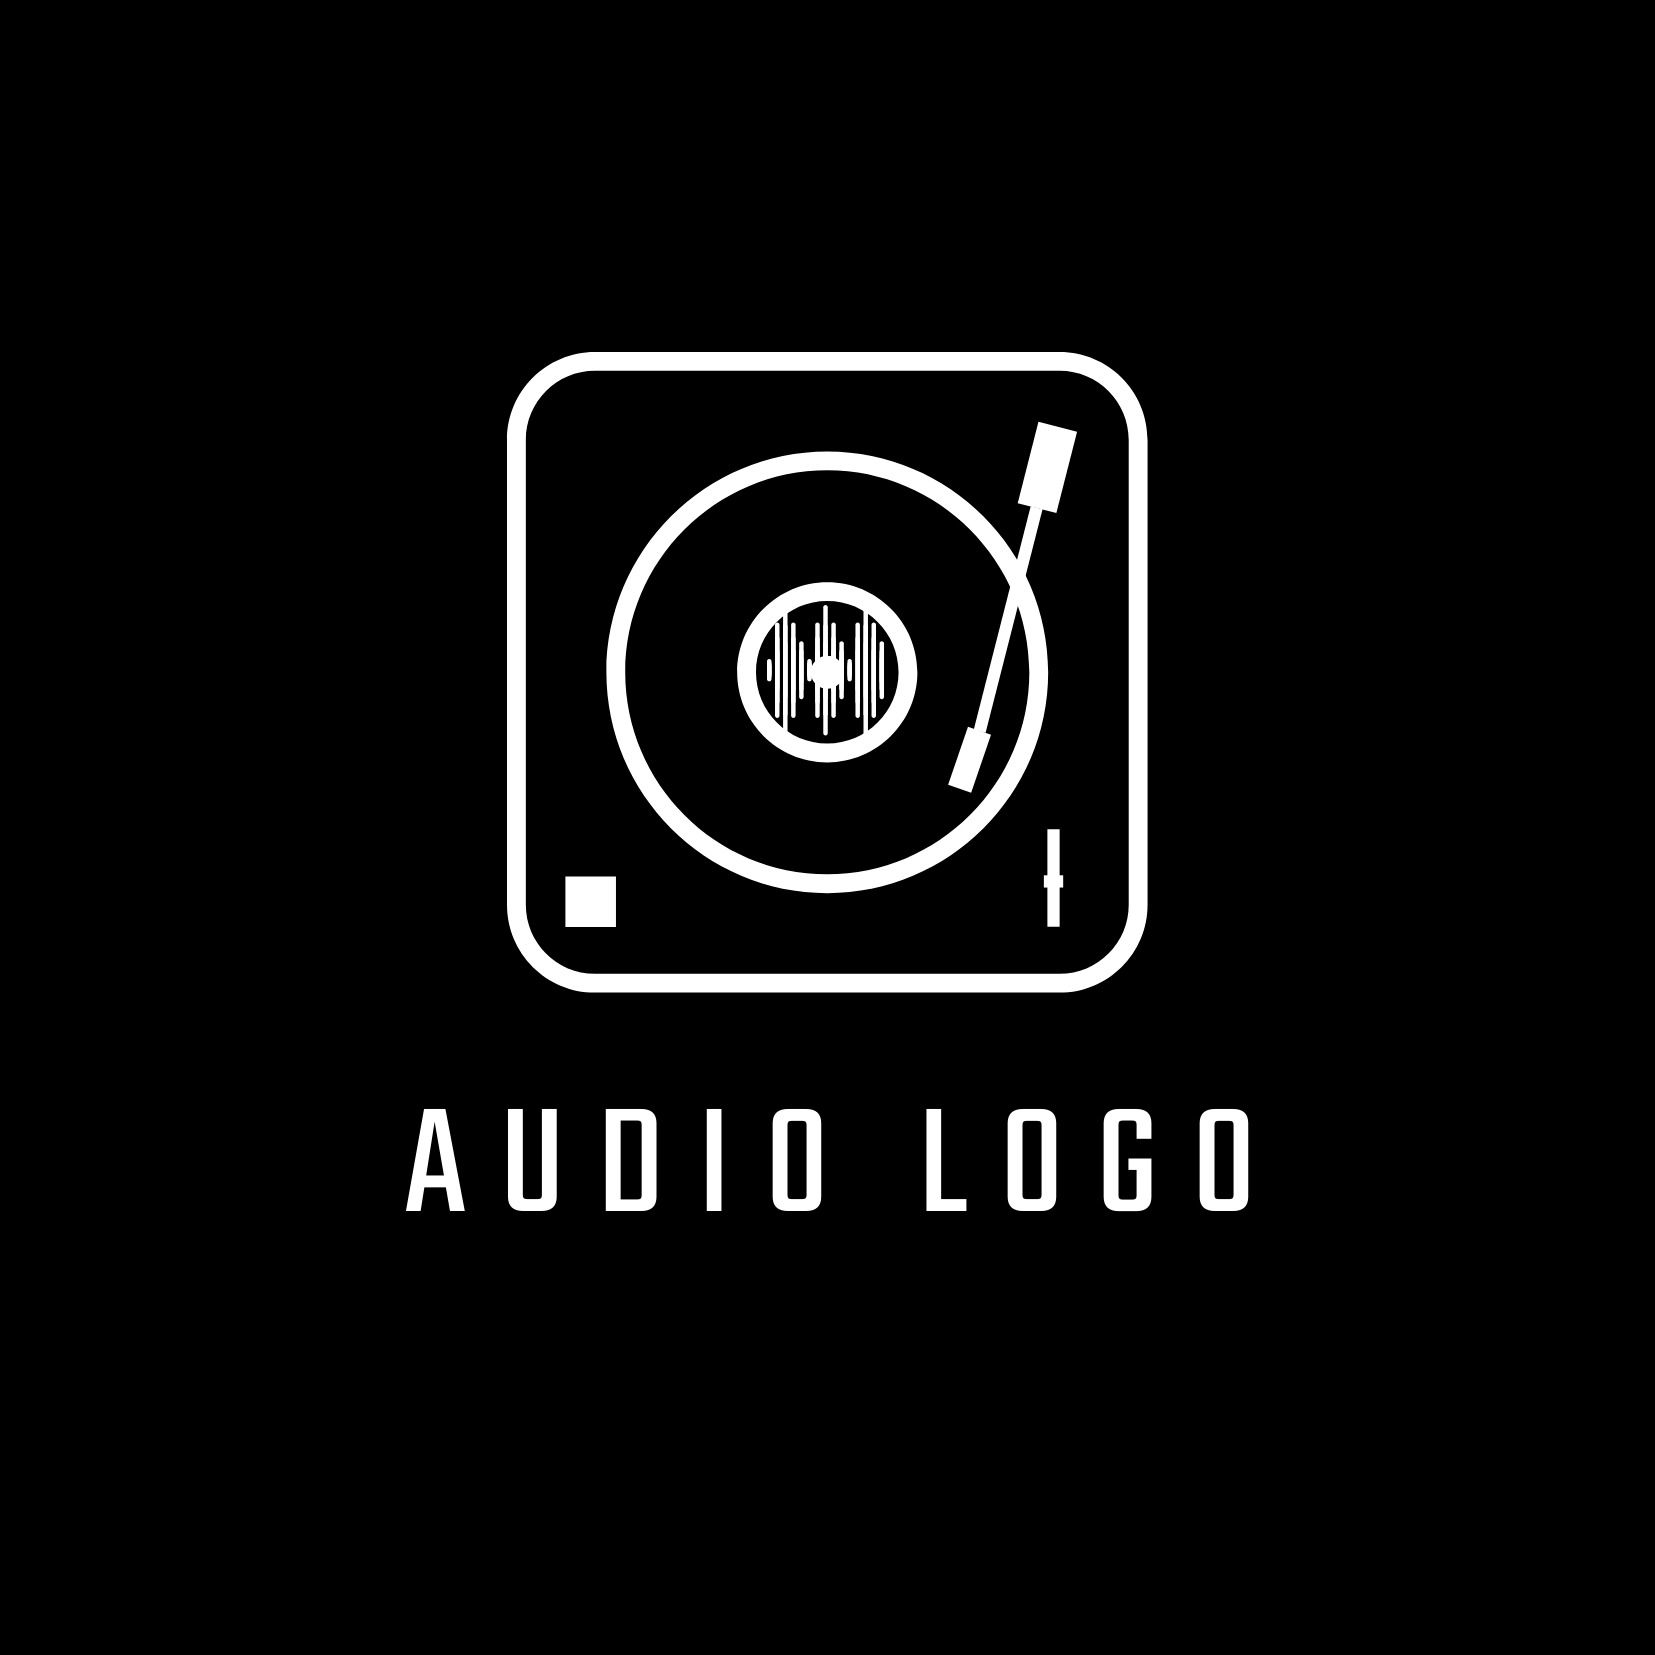 Logo audio noir et blanc - Avantages de la police Teko - Image